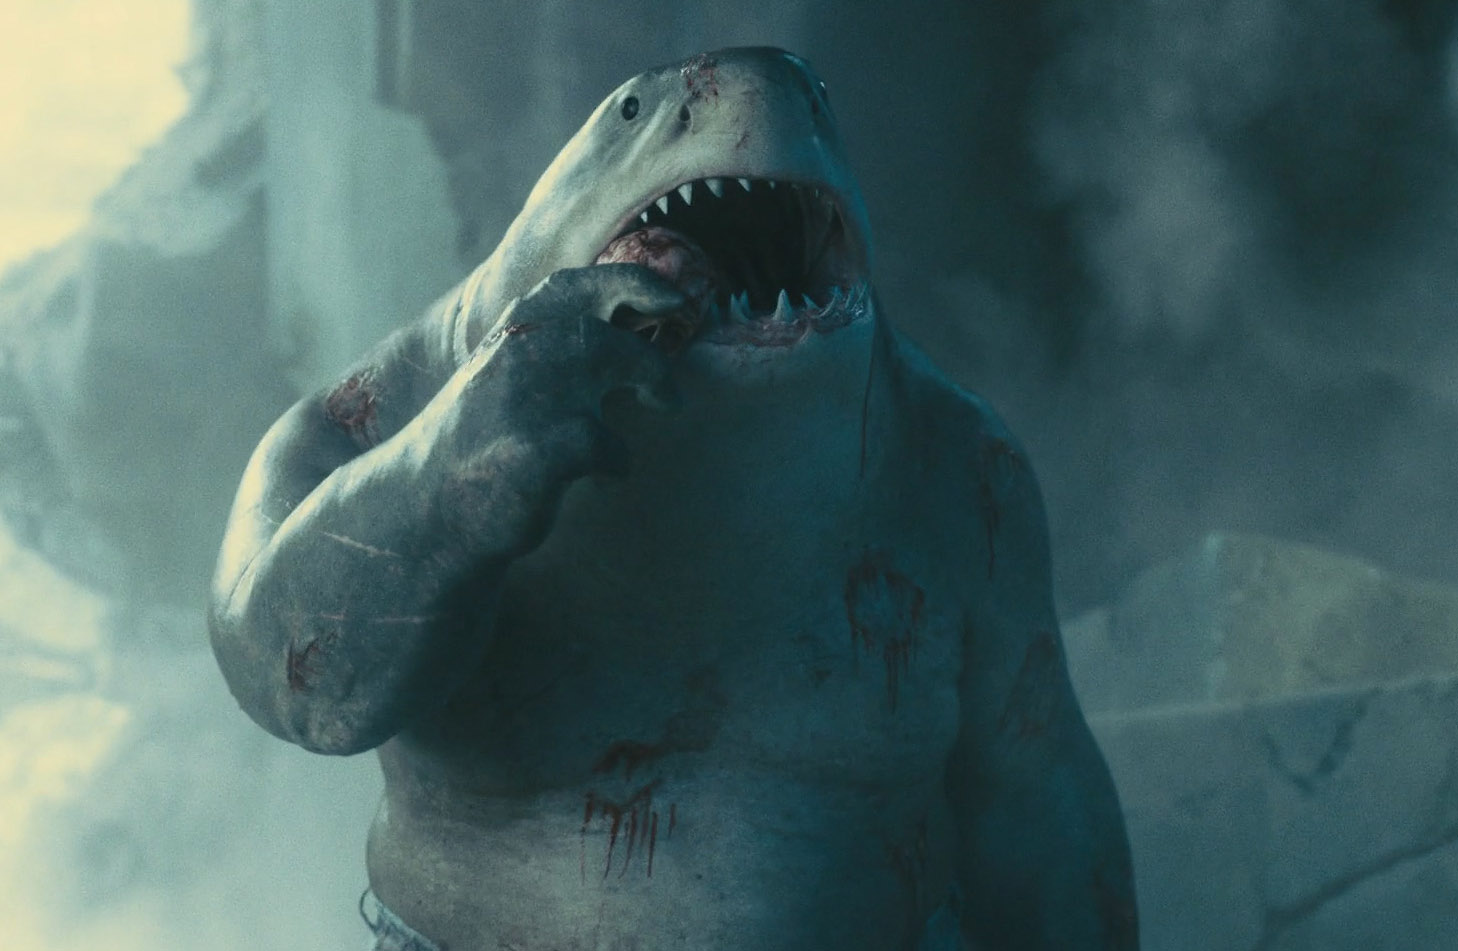 鲨鱼王是电影中的萌宠型角色,图片来源《x特遣队:集结》剧照